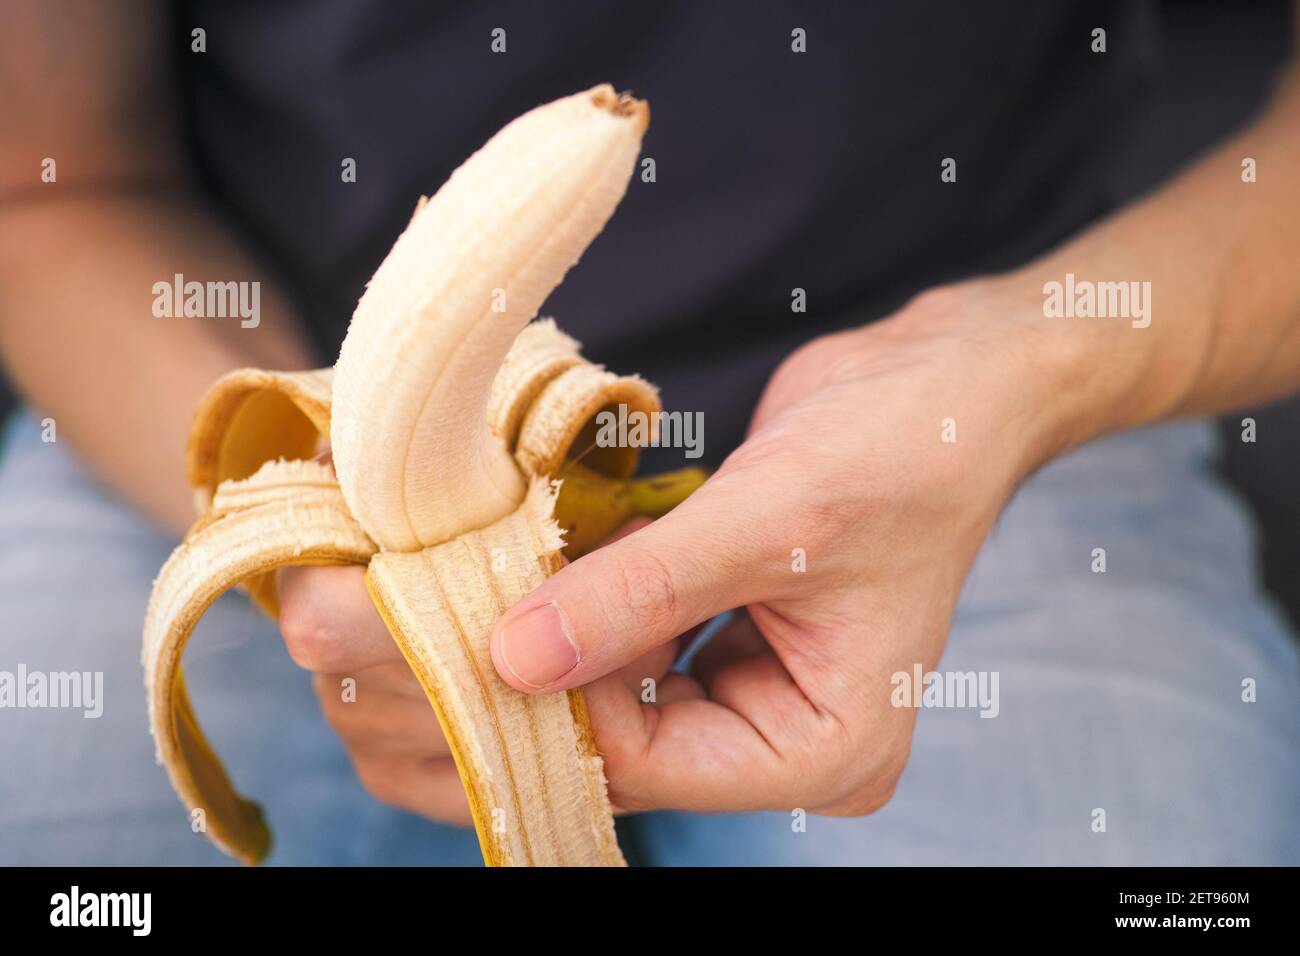 Ein Mann schält eine frische Banane. Geringe Schärfentiefe. Nahaufnahme. Stockfoto